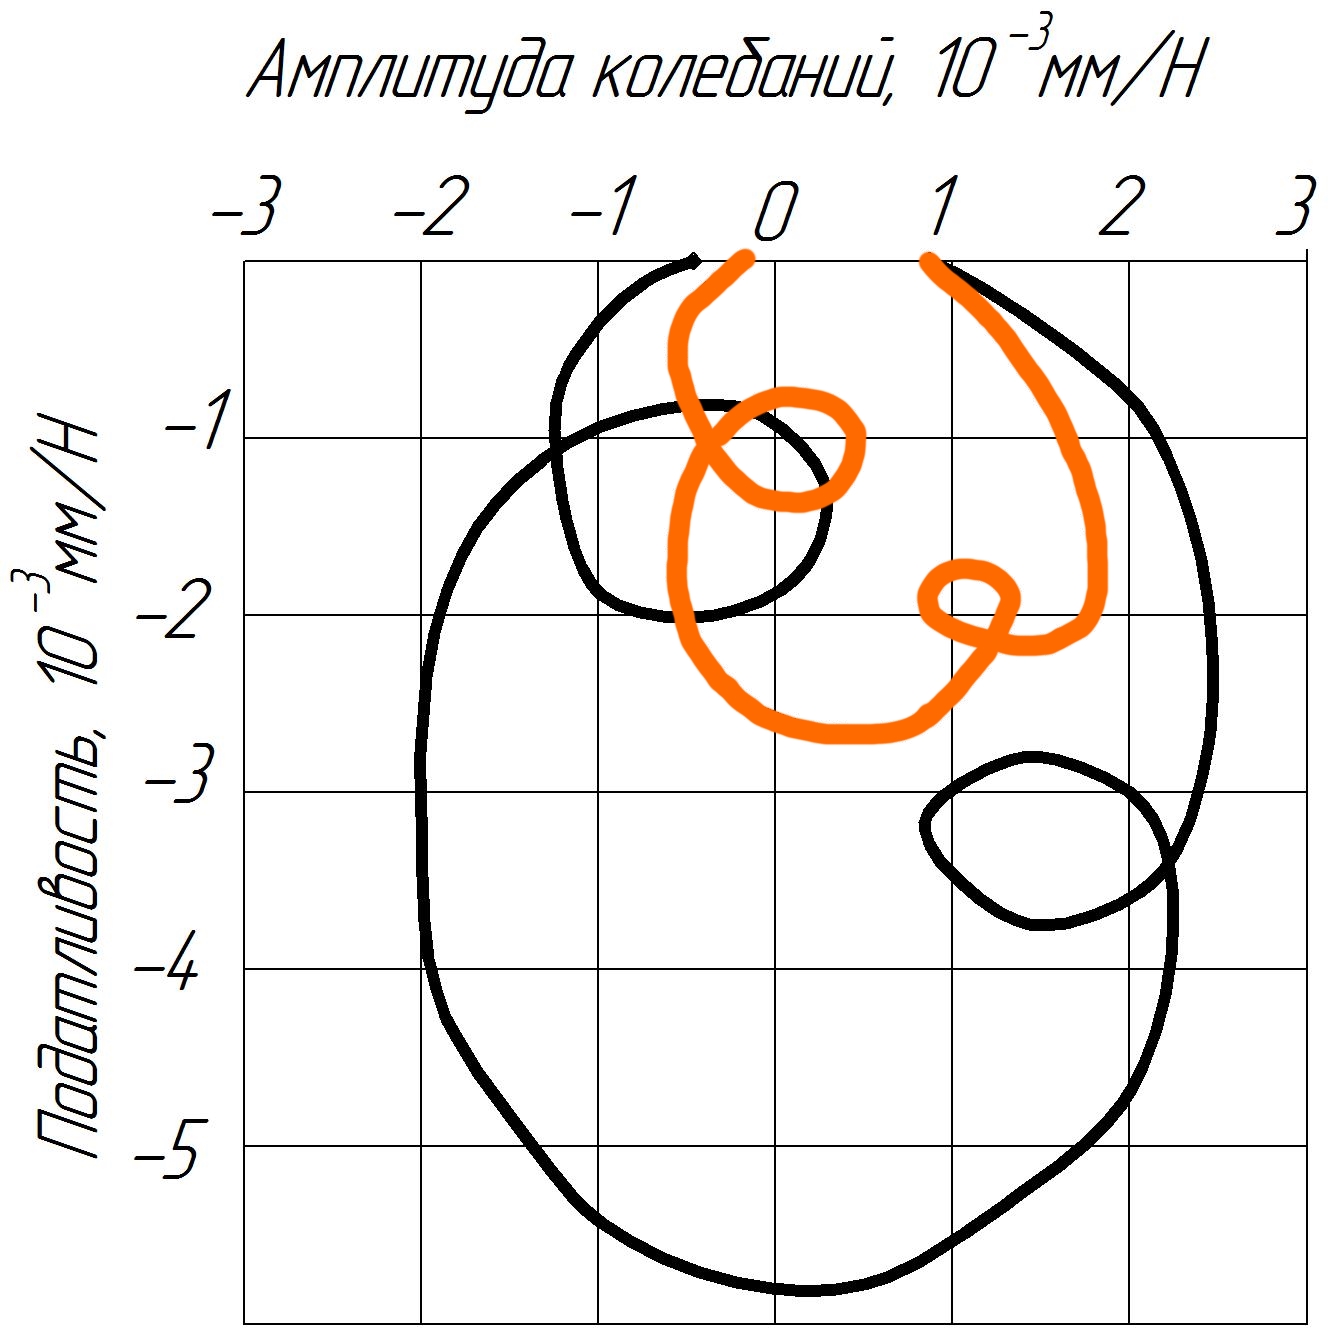 АФЧХ настольного горизонтально-фрезерного станка: оранжевая кривая – станок с предложенной синтеграновой станиной; черный – станок с чугунной станиной при тех же габаритах